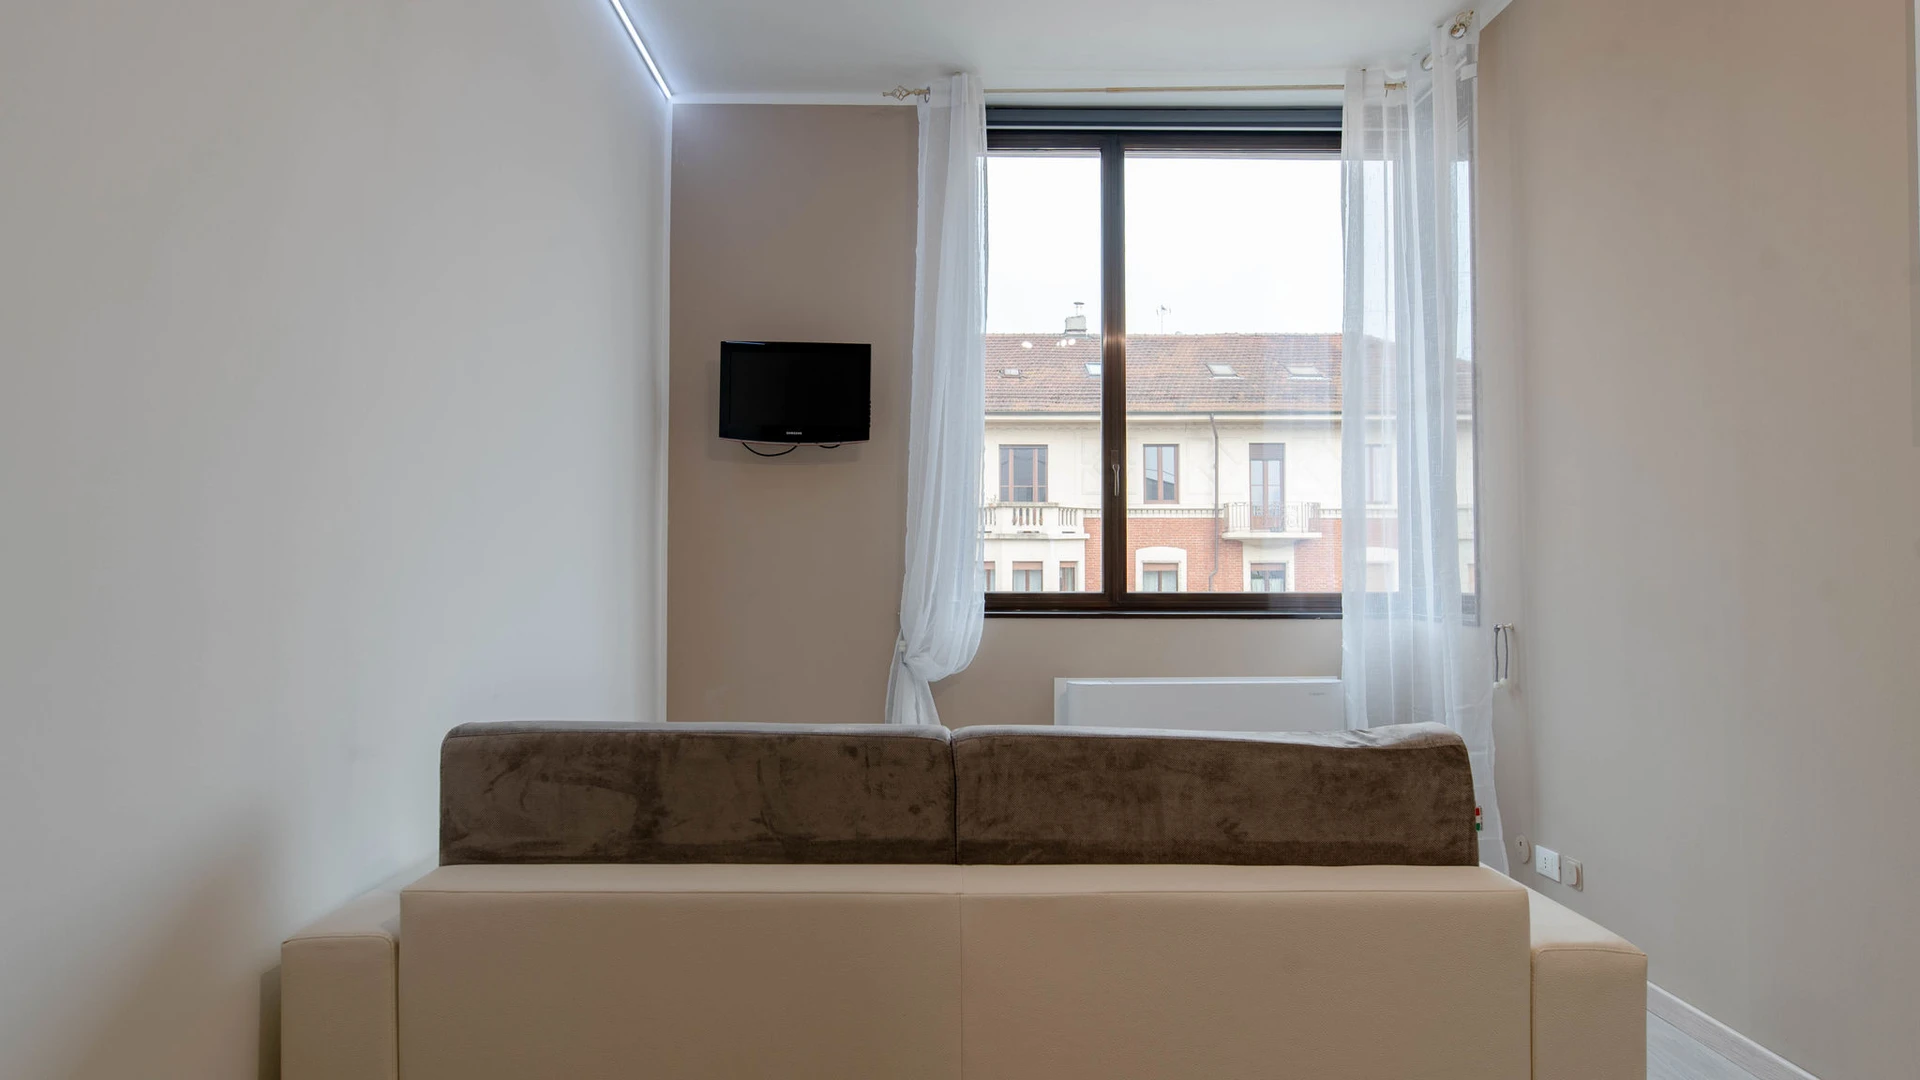 Apartamento moderno y luminoso en Turín